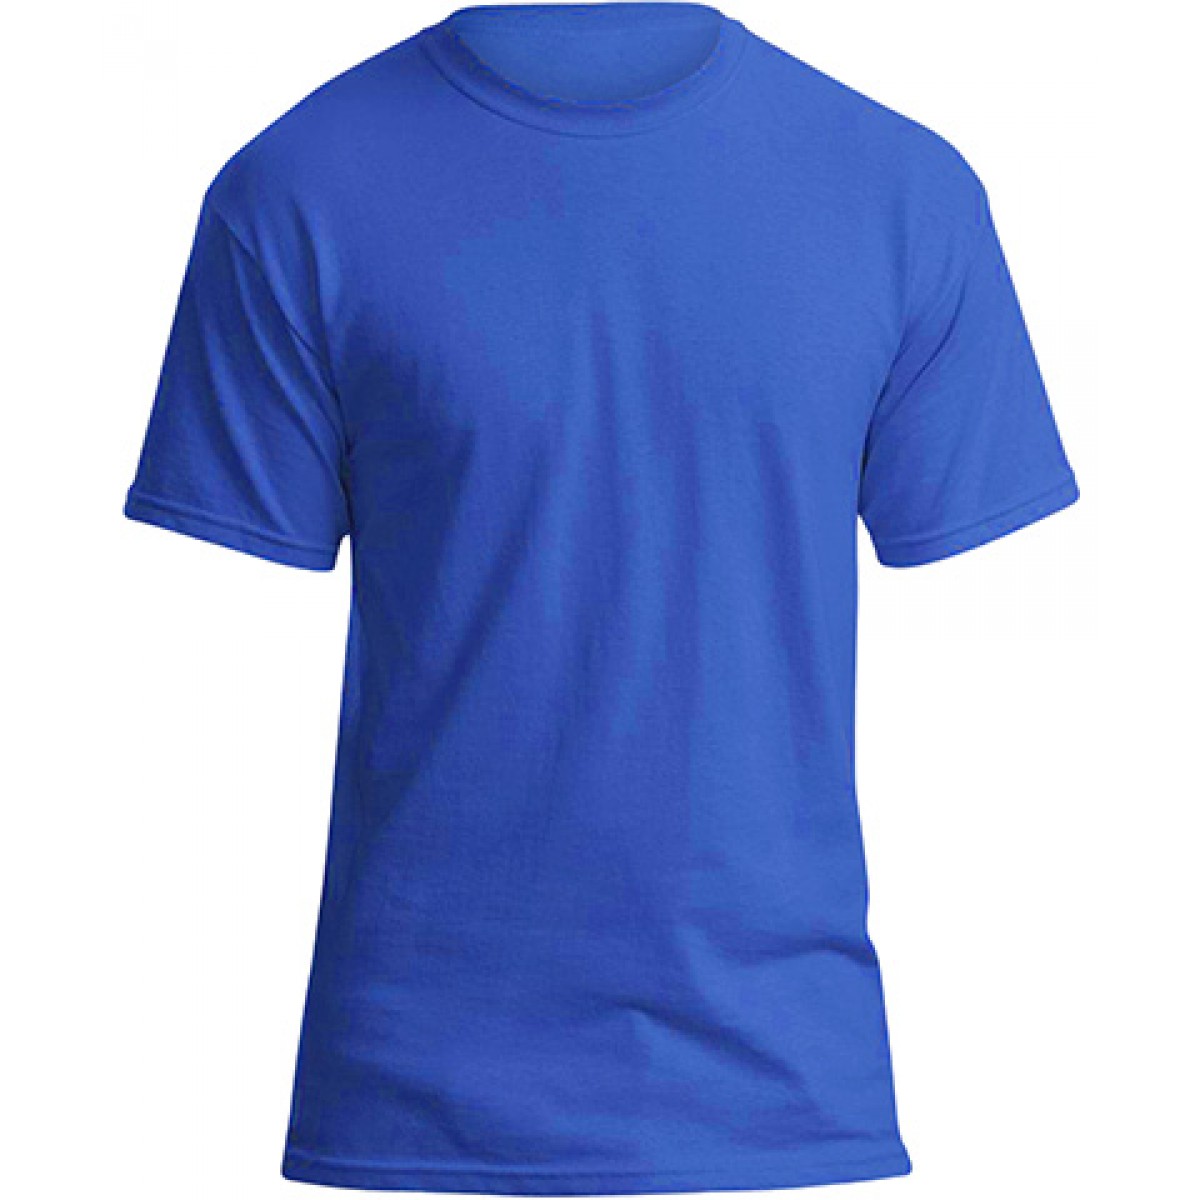 Soft 100% Cotton T-Shirt-Royal Blue-M